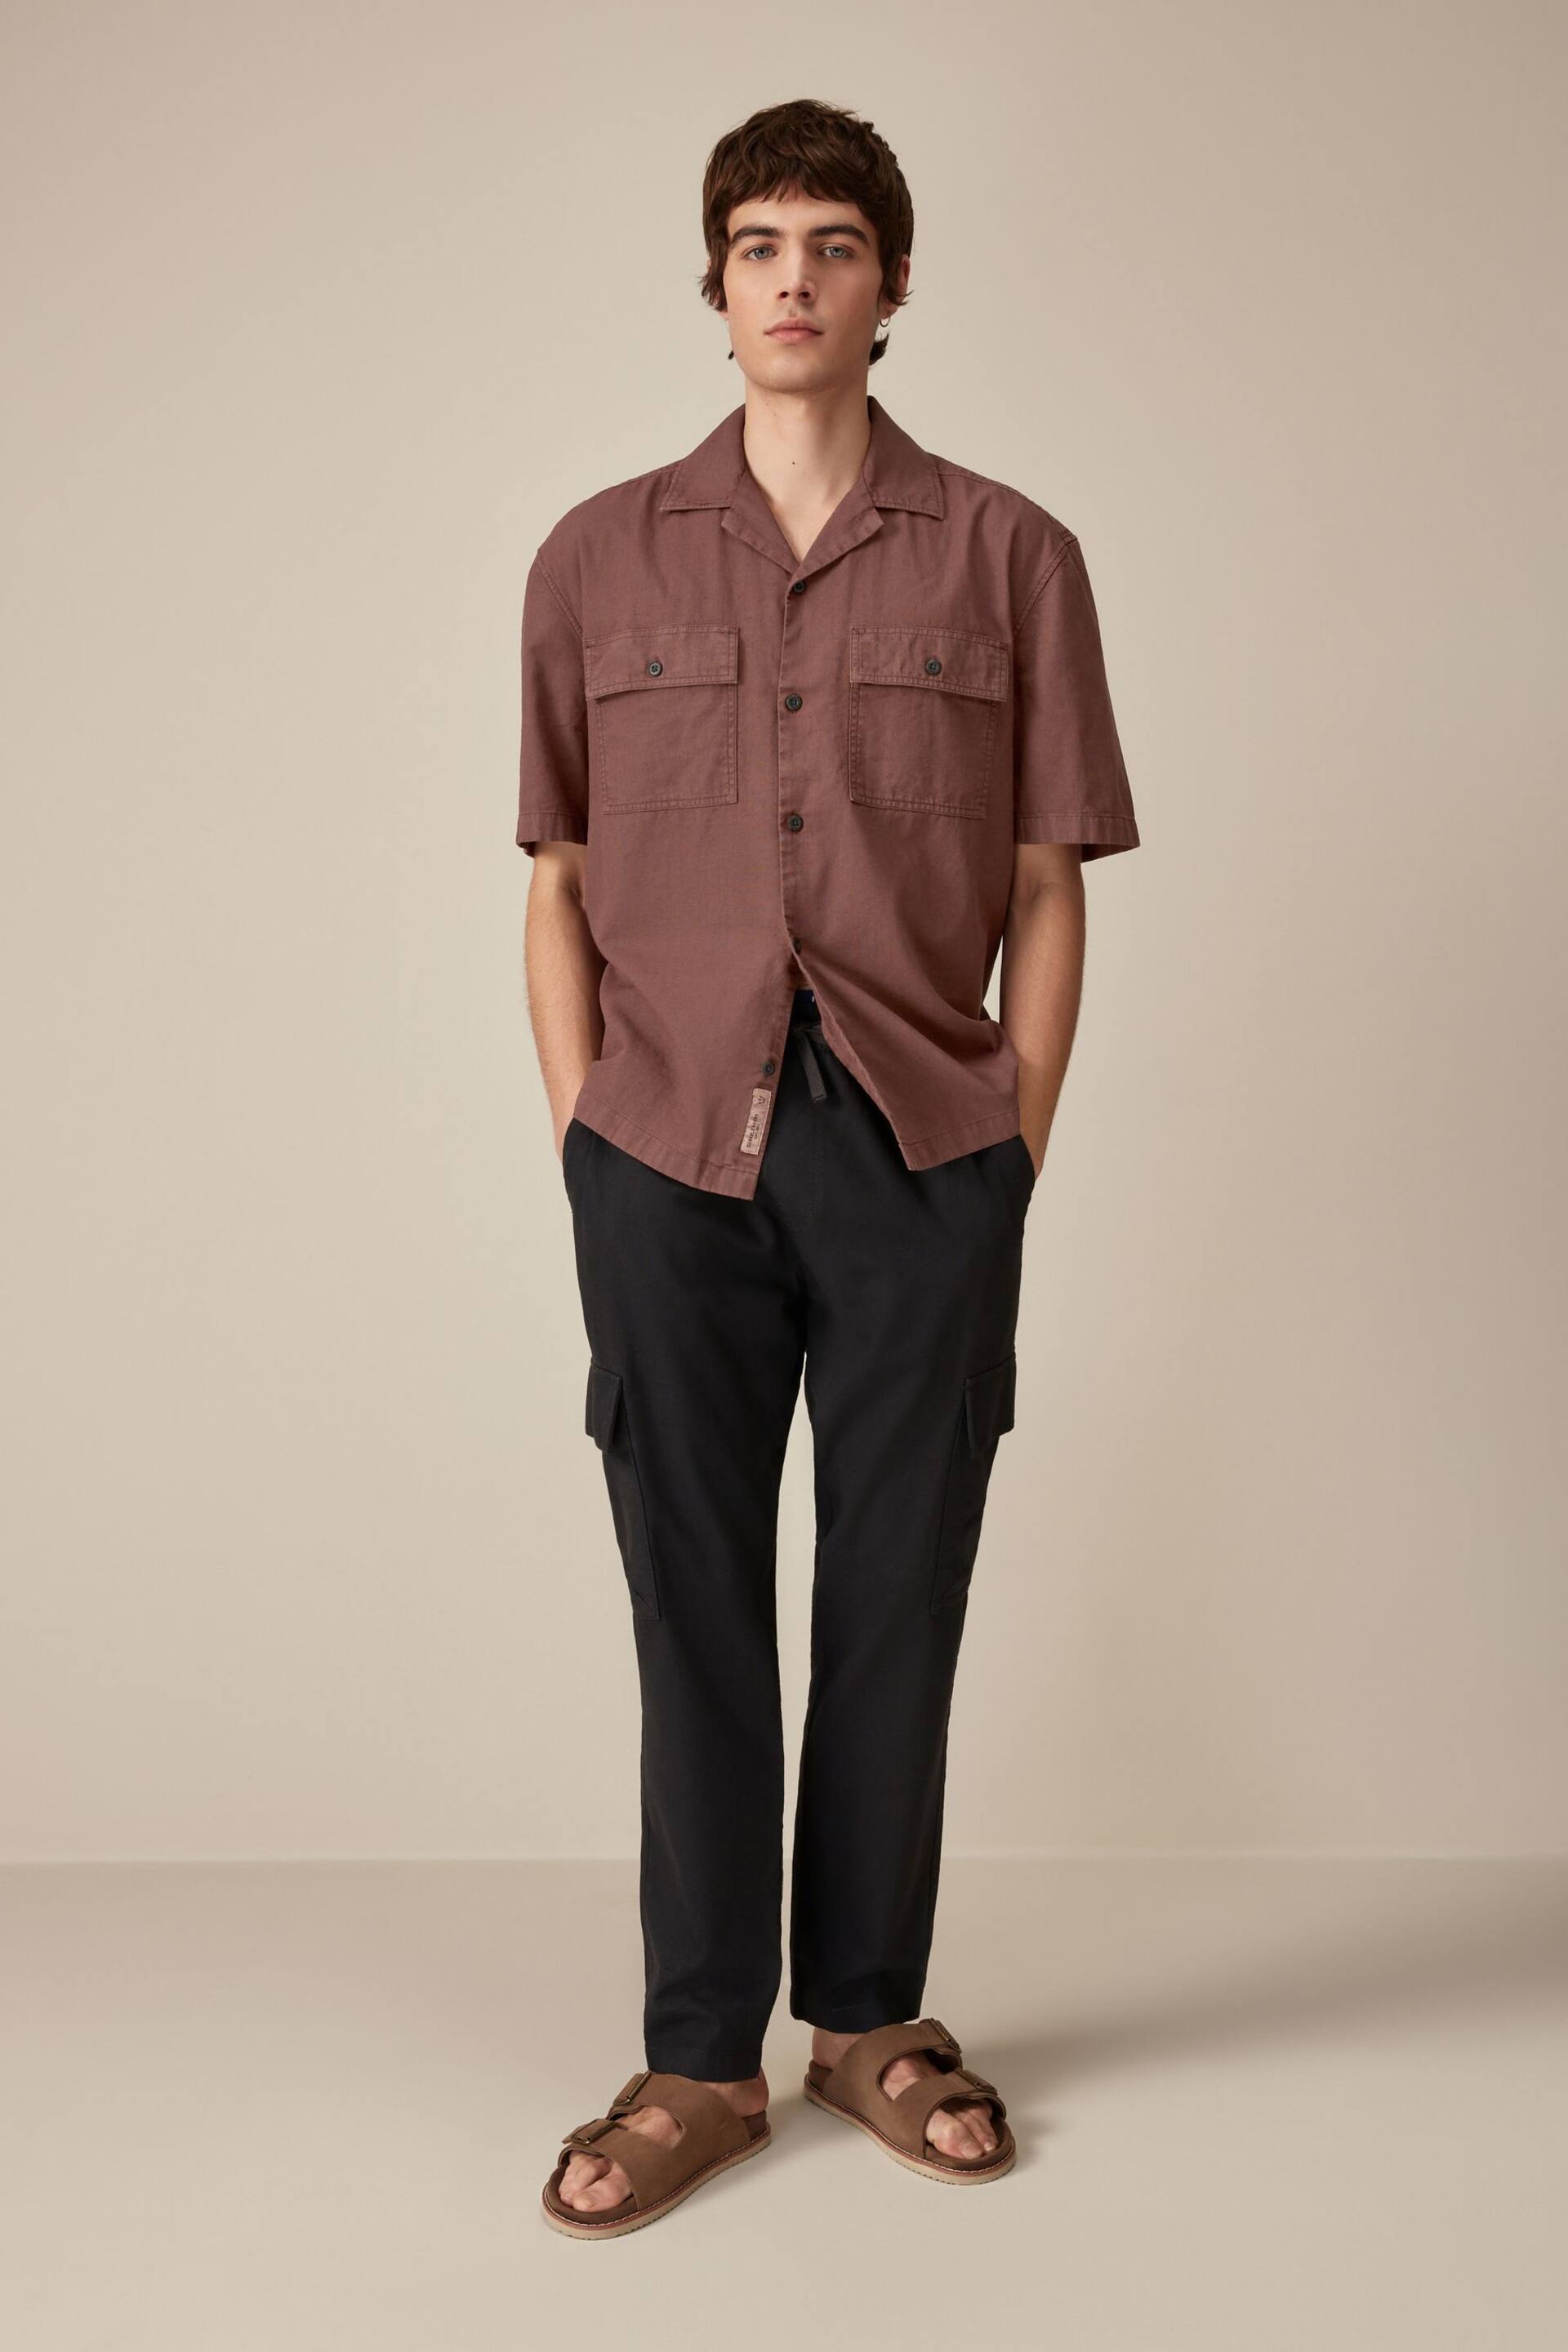 Rust Brown Linen Blend Short Sleeve Shirt with Cuban Collar - Image 2 of 9